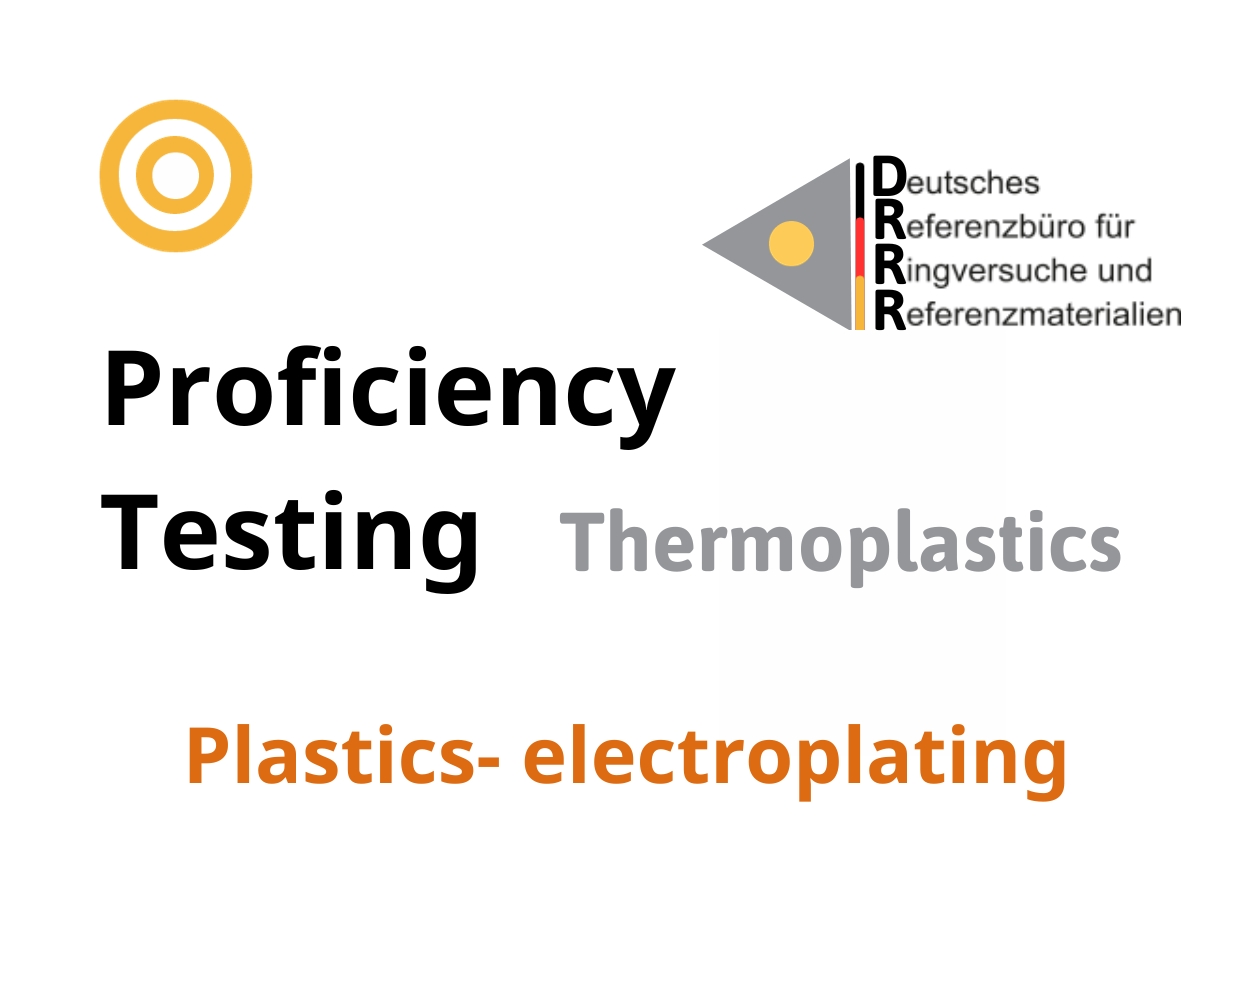 Thử nghiệm thành thạo (ISO 17043) nhựa nhiệt dẻo trên nền mẫu Plastics - electroplating, Hãng DRRR, Đức